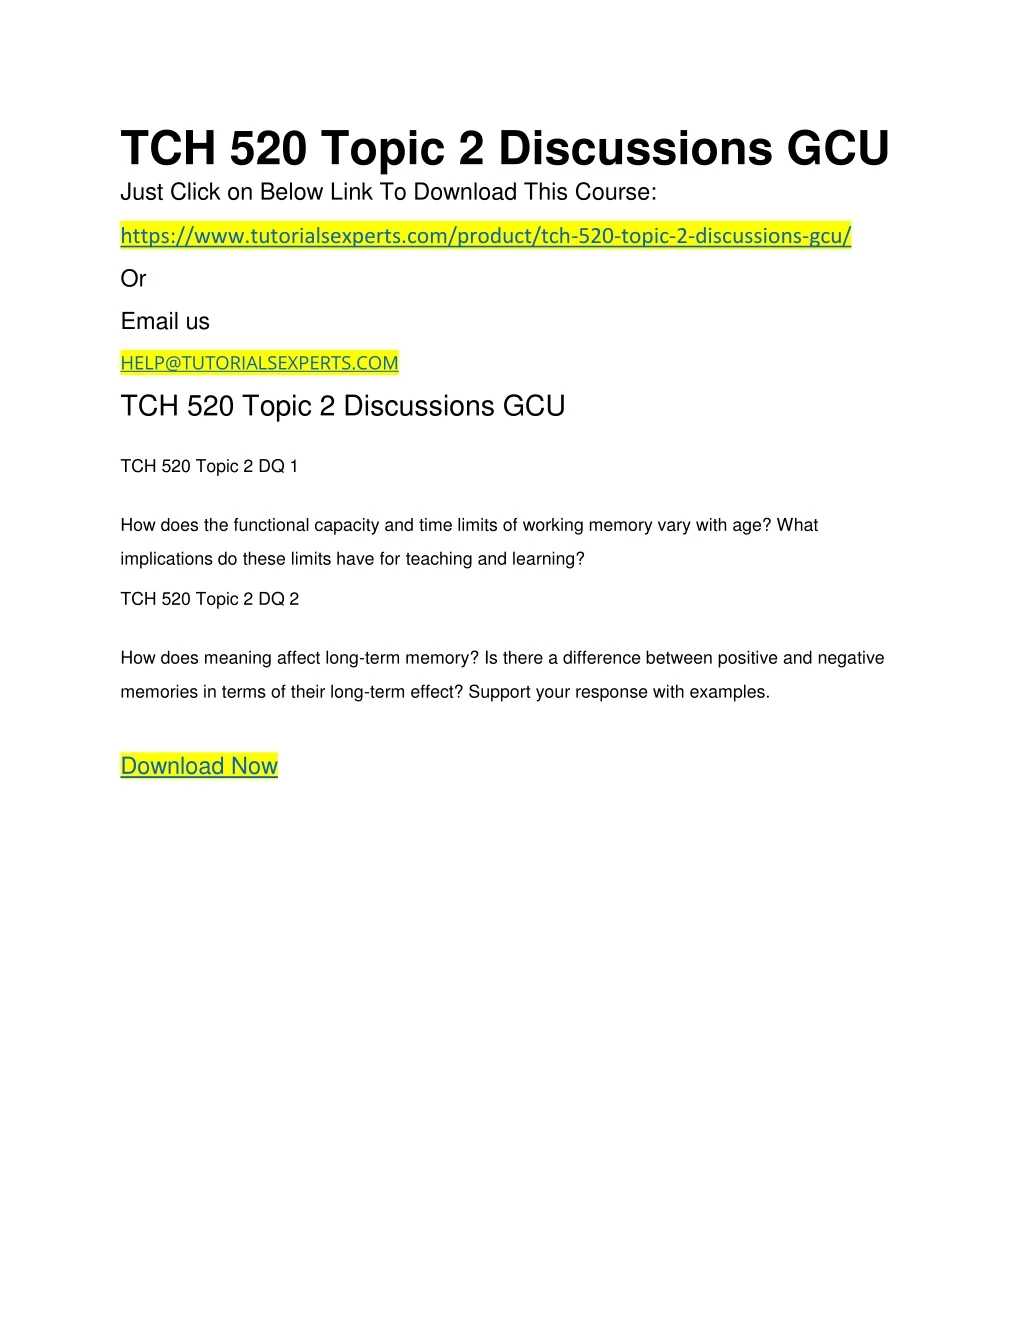 tch 520 topic 2 discussions gcu just click